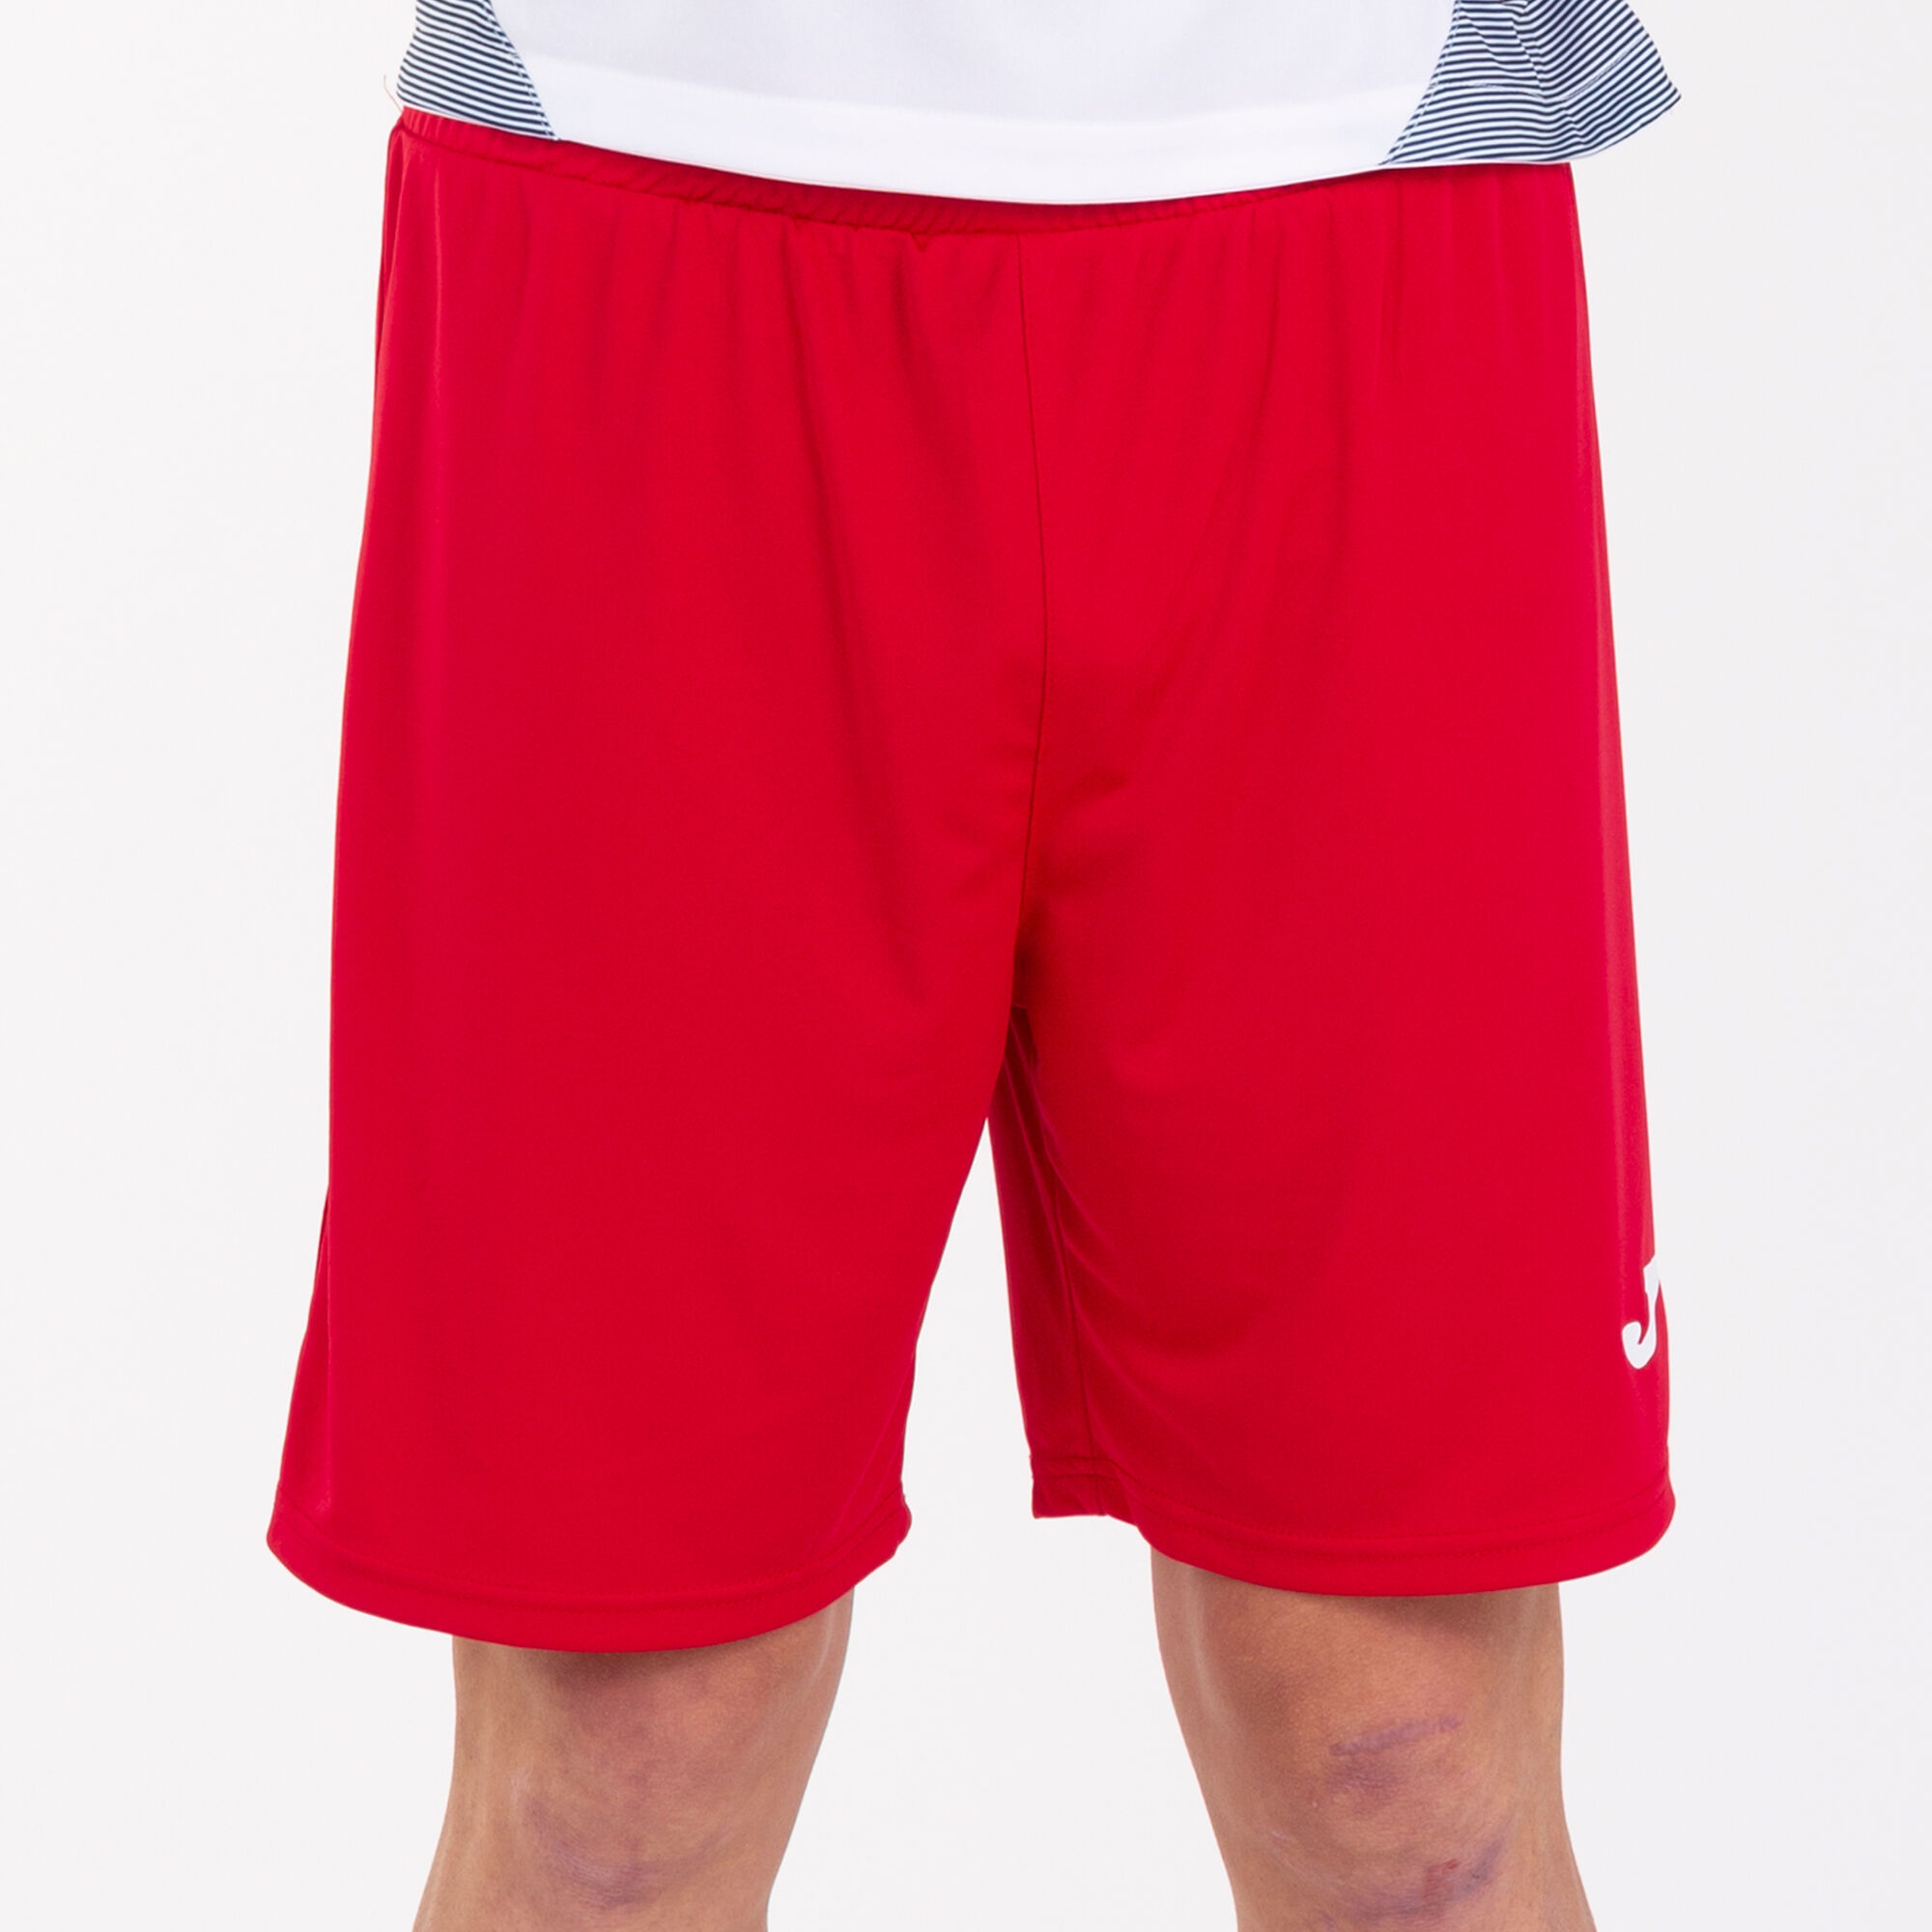 Shorts man Nobel red